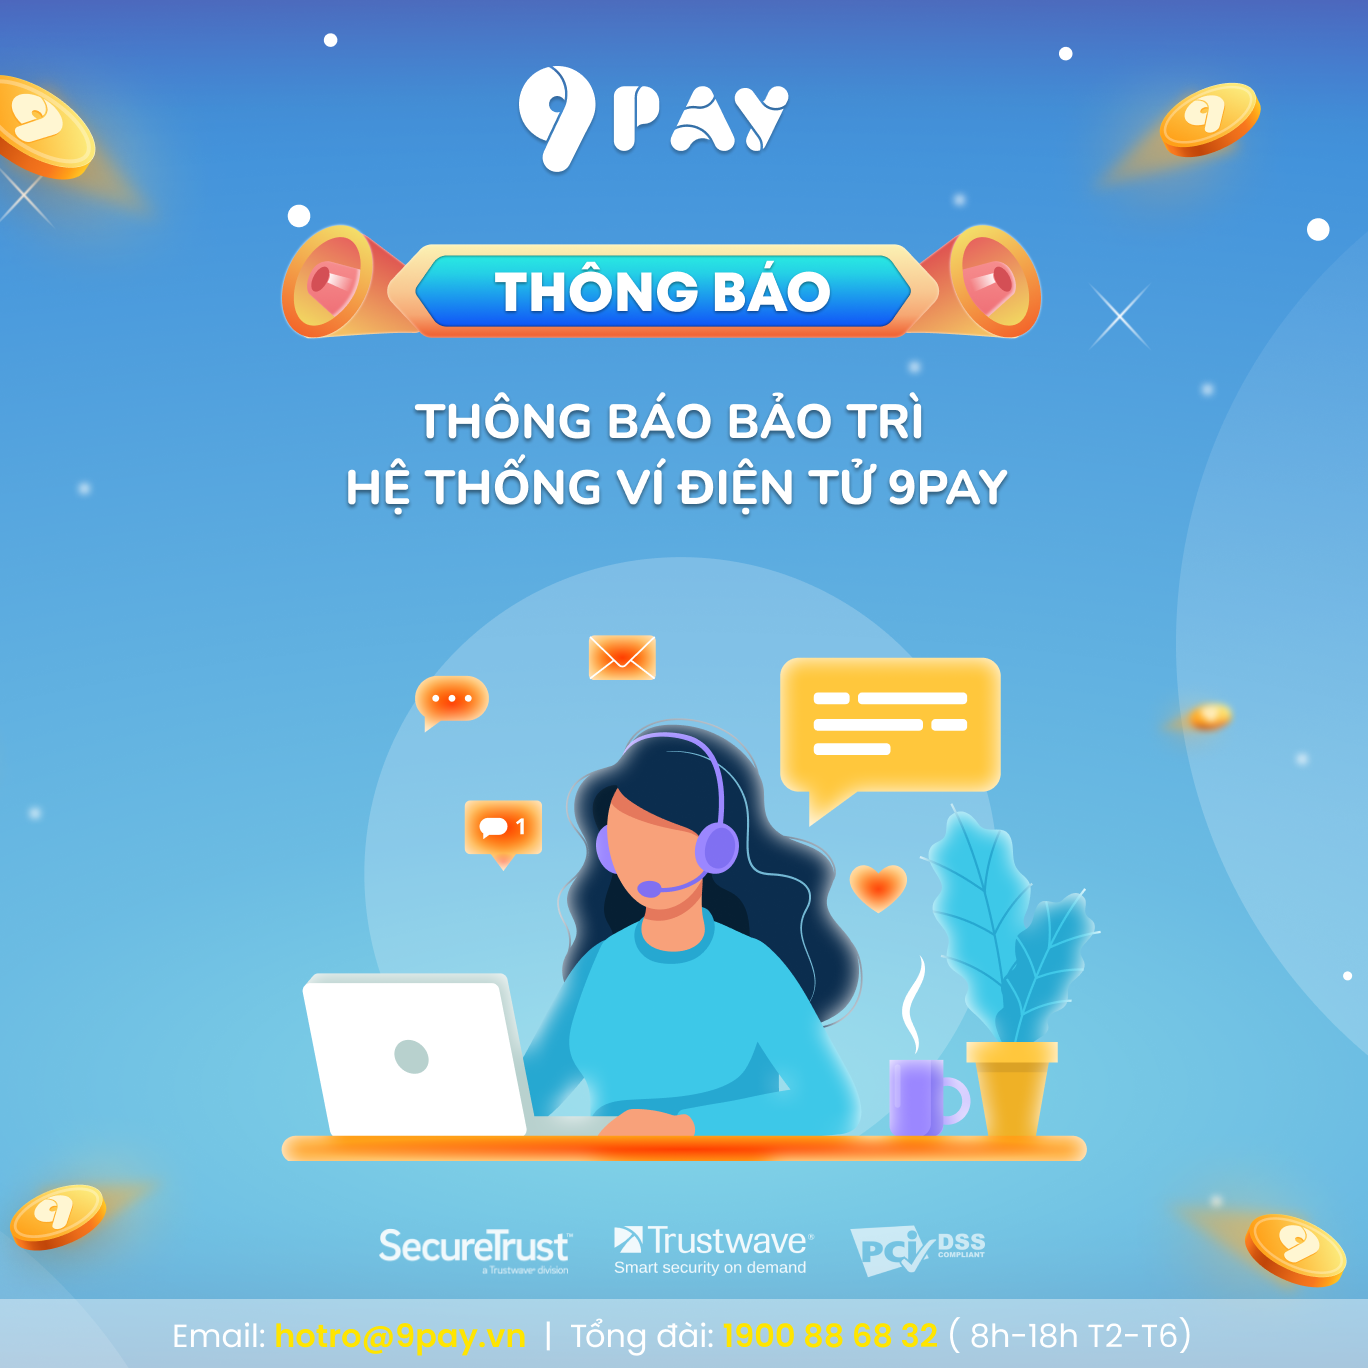 LAej-thong-bao-bao-tri-he-thong-vi-dien-tu-9pay